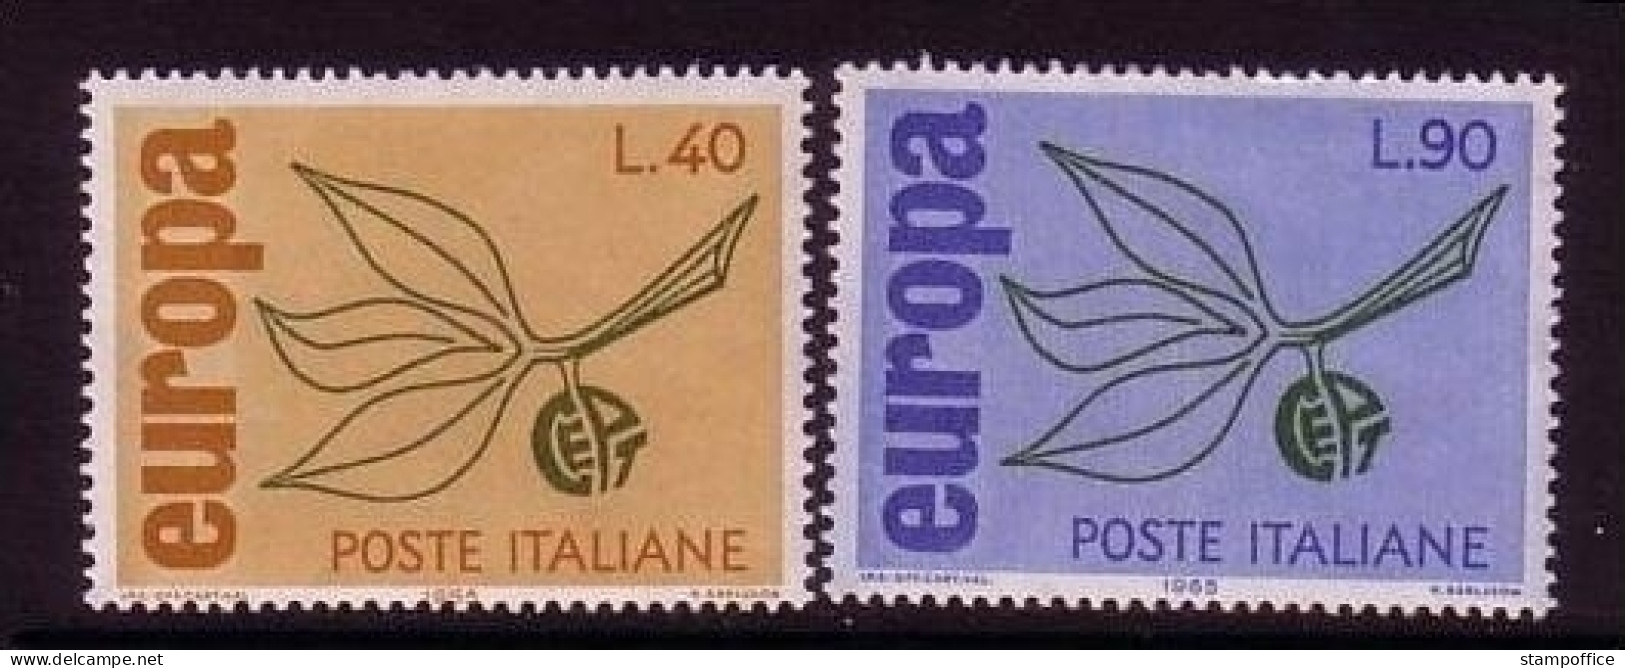 ITALIEN MI-NR. 1186-1187 POSTFRISCH(MINT) EUROPA 1965 ZWEIG - 1965